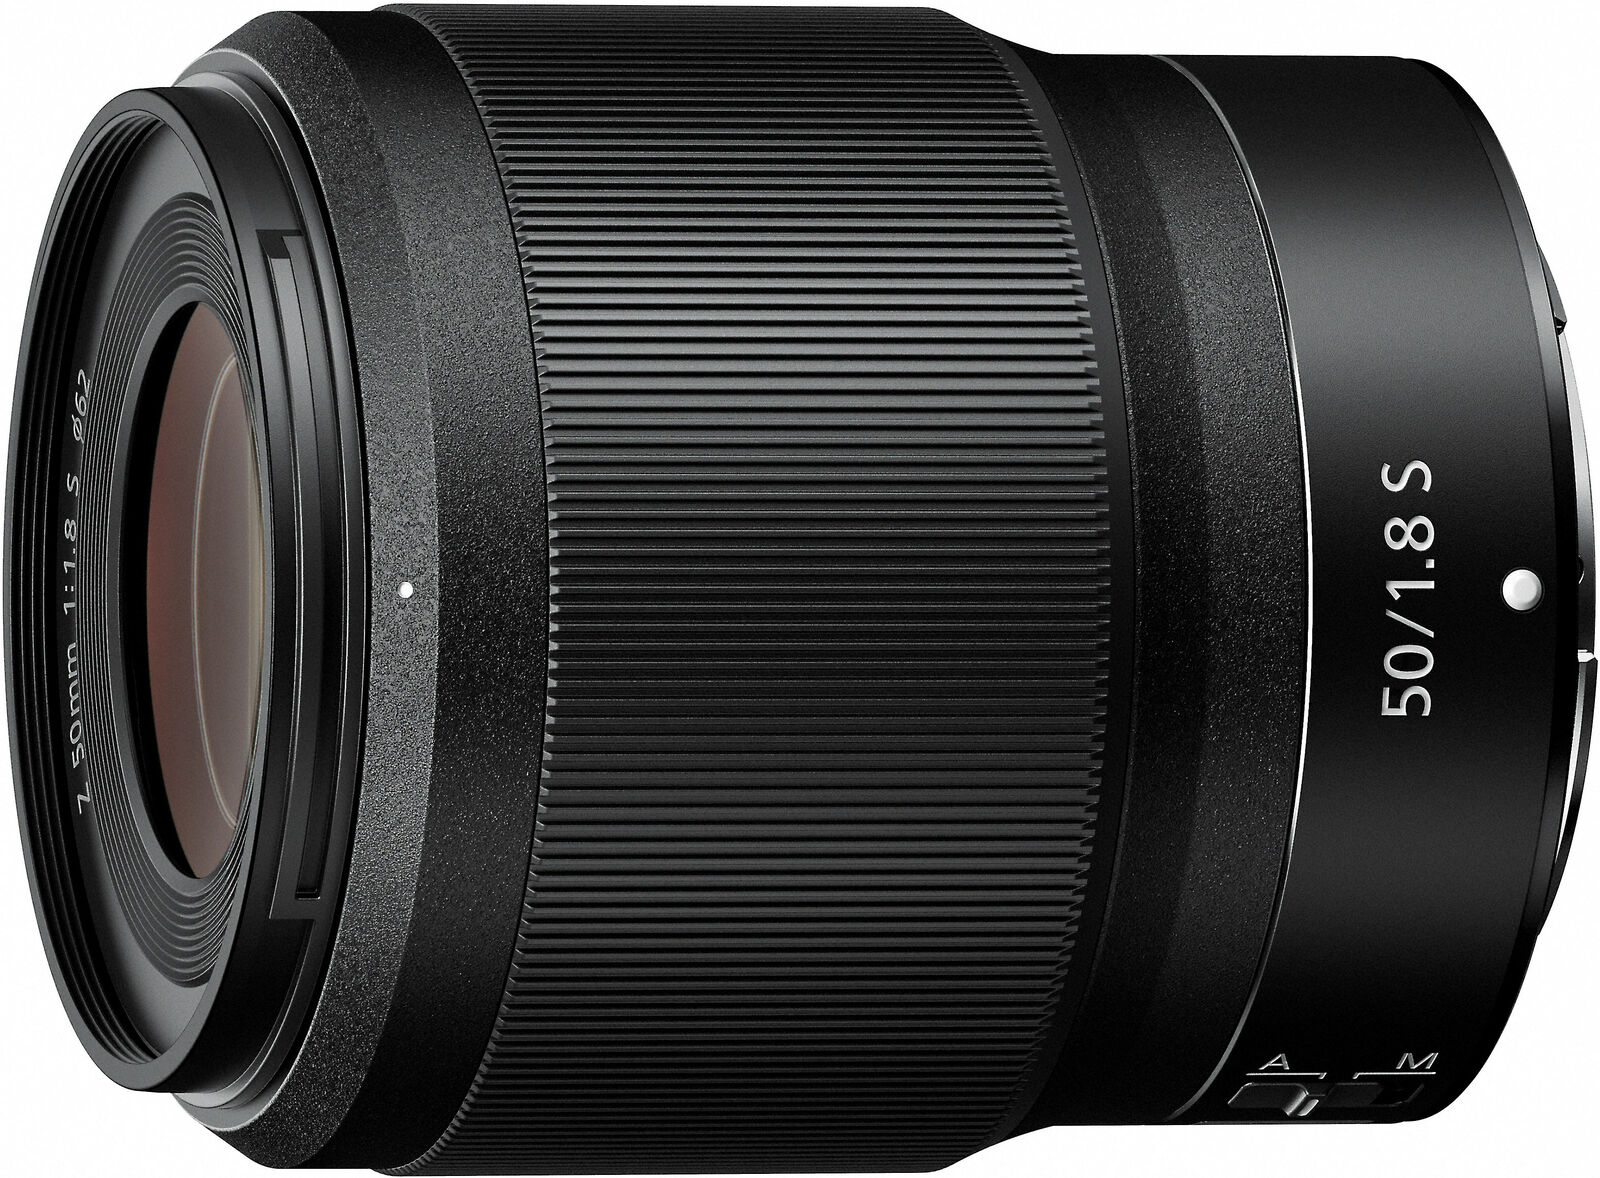 Nikon Nikkor Z 50Mm F/1.8 S Lens For Mirrorless